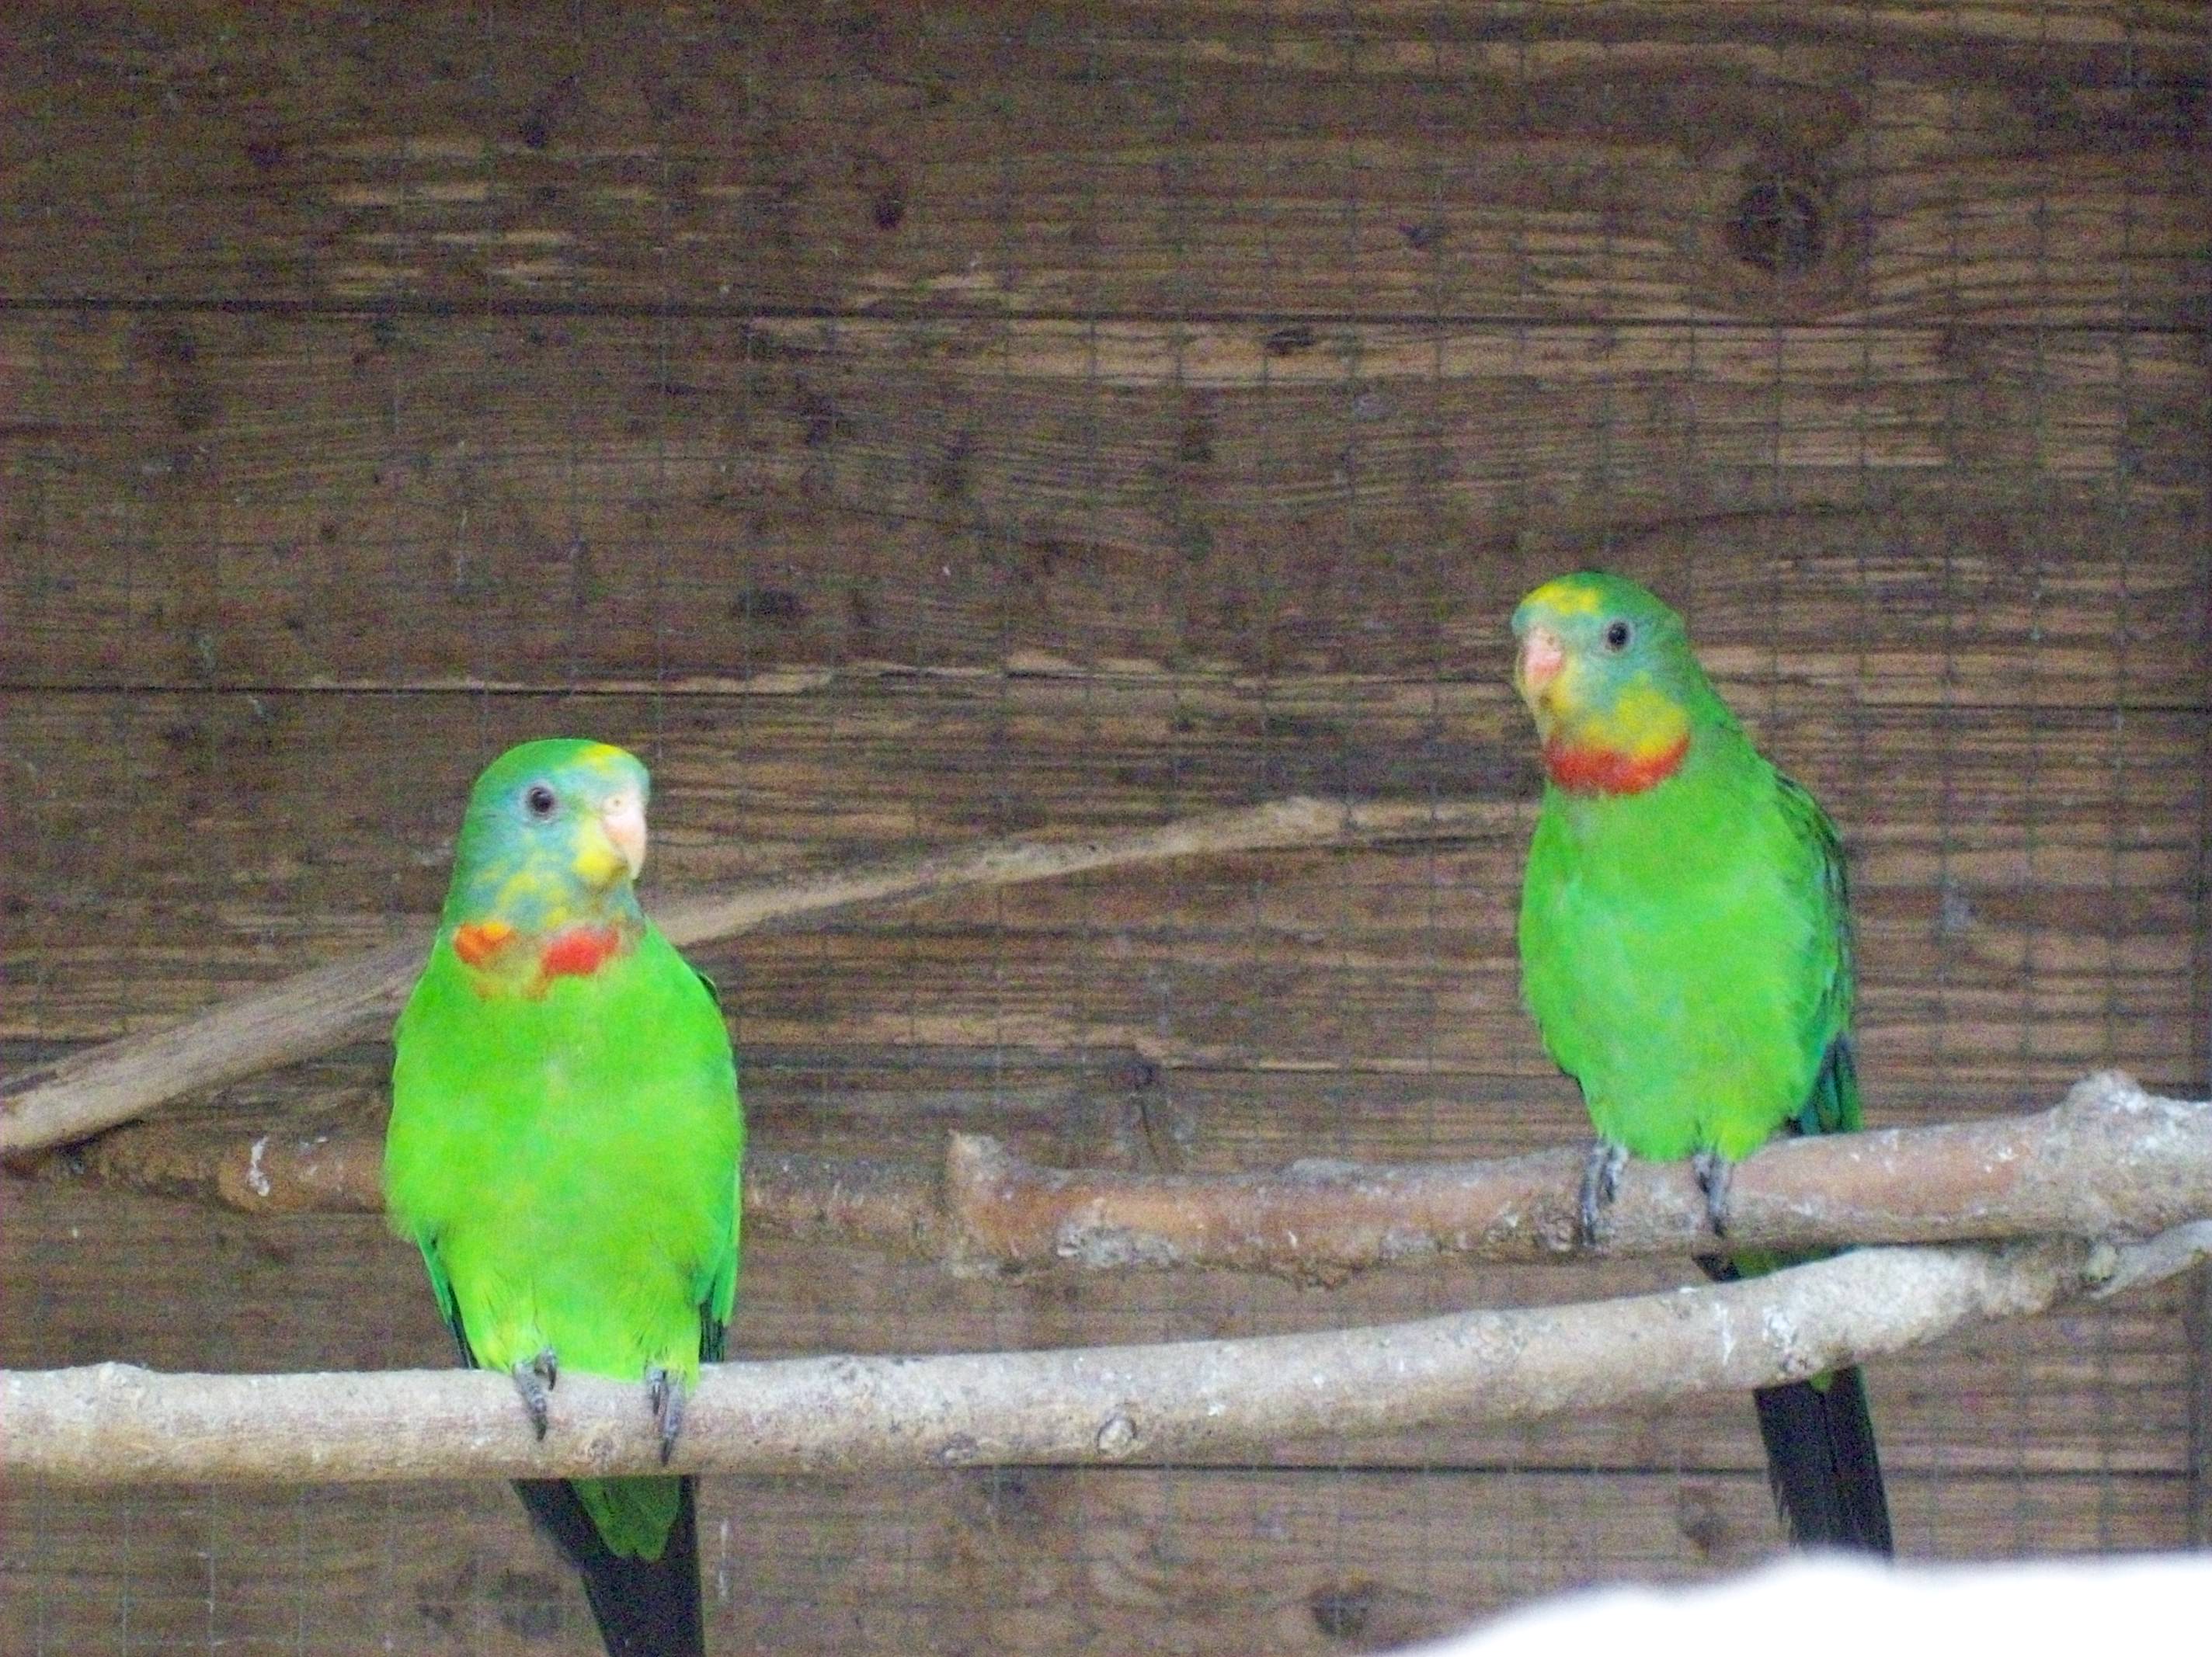 prolevel riverbank habitats help tropical birds